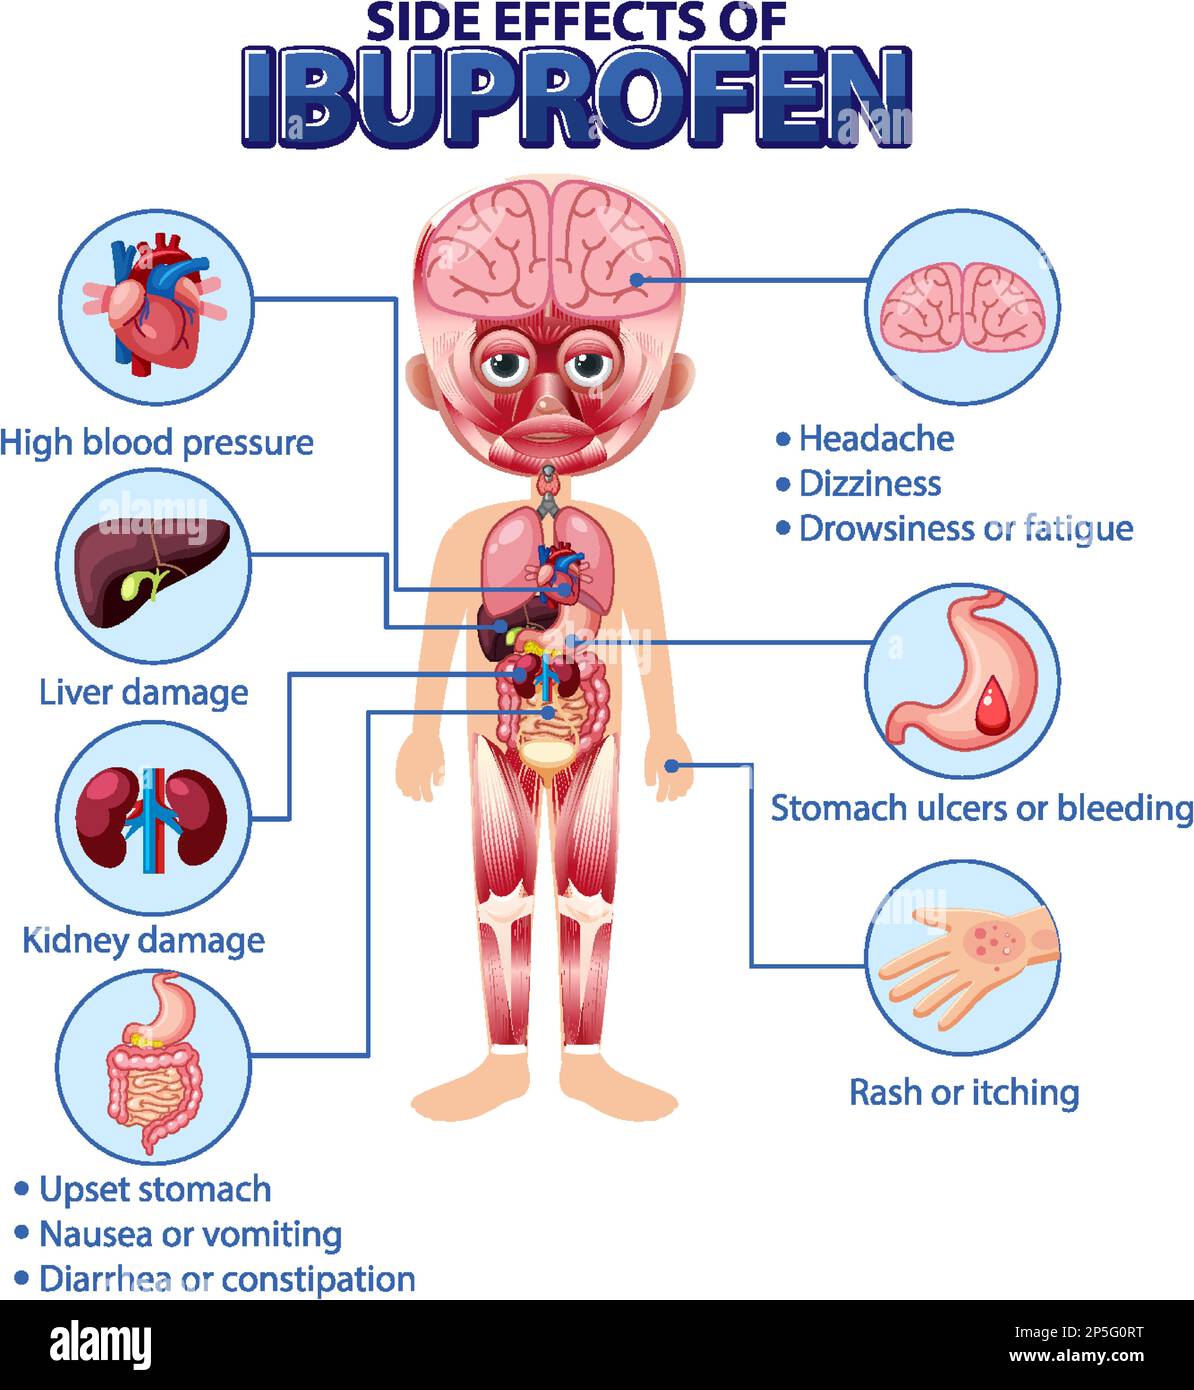 Anatomia umana diagramma cartoon stile di ibuprofene effetti collaterali  illustrazione Immagine e Vettoriale - Alamy